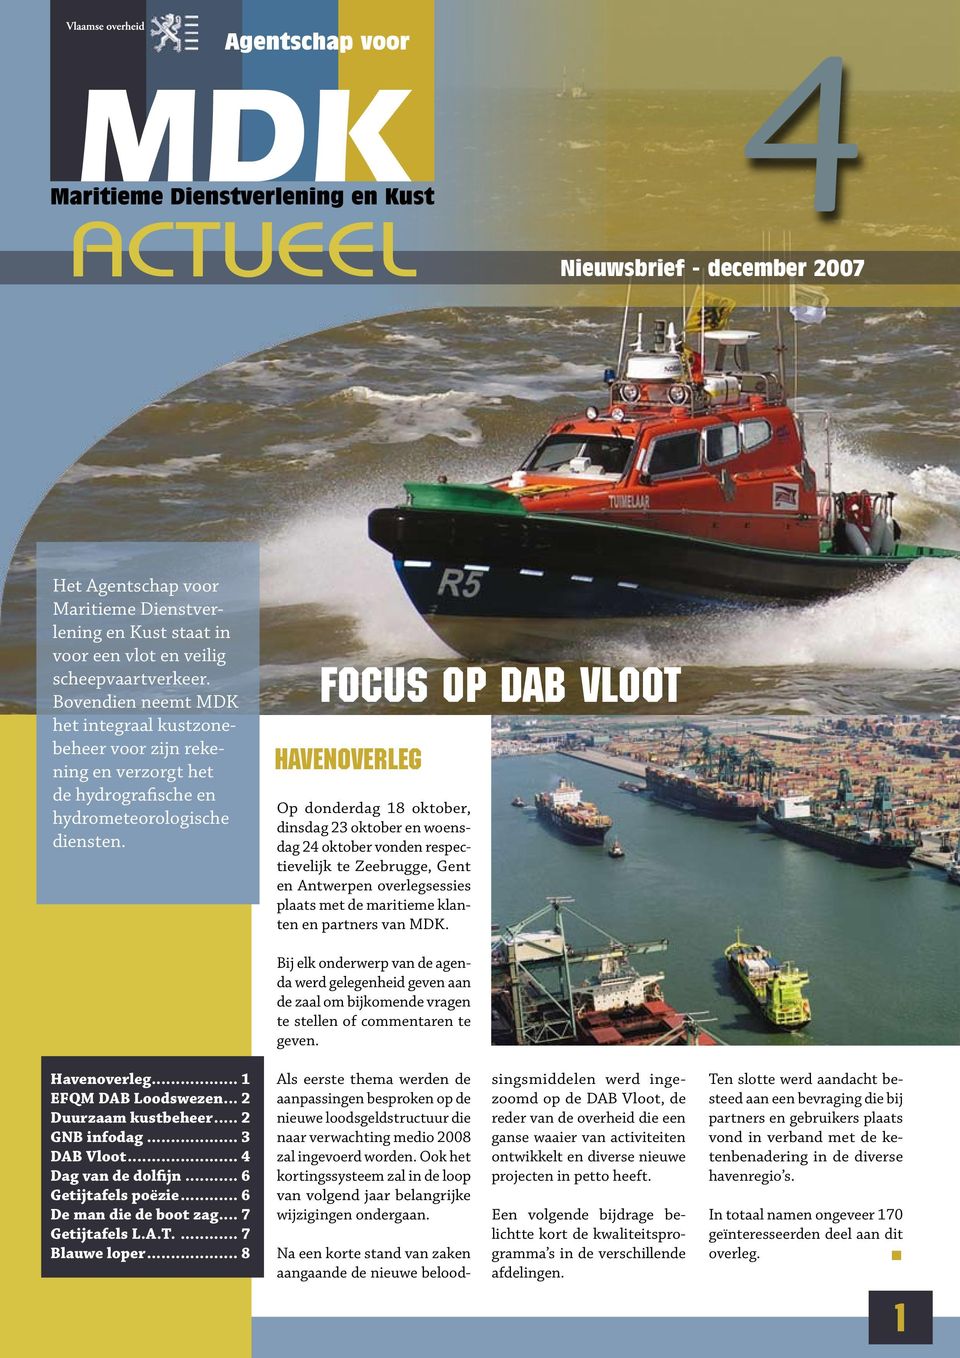 Focus op DAB Vloot havenoverleg Op donderdag 18 oktober, dinsdag 23 oktober en woensdag 24 oktober vonden respectievelijk te Zeebrugge, Gent en Antwerpen overlegsessies plaats met de maritieme